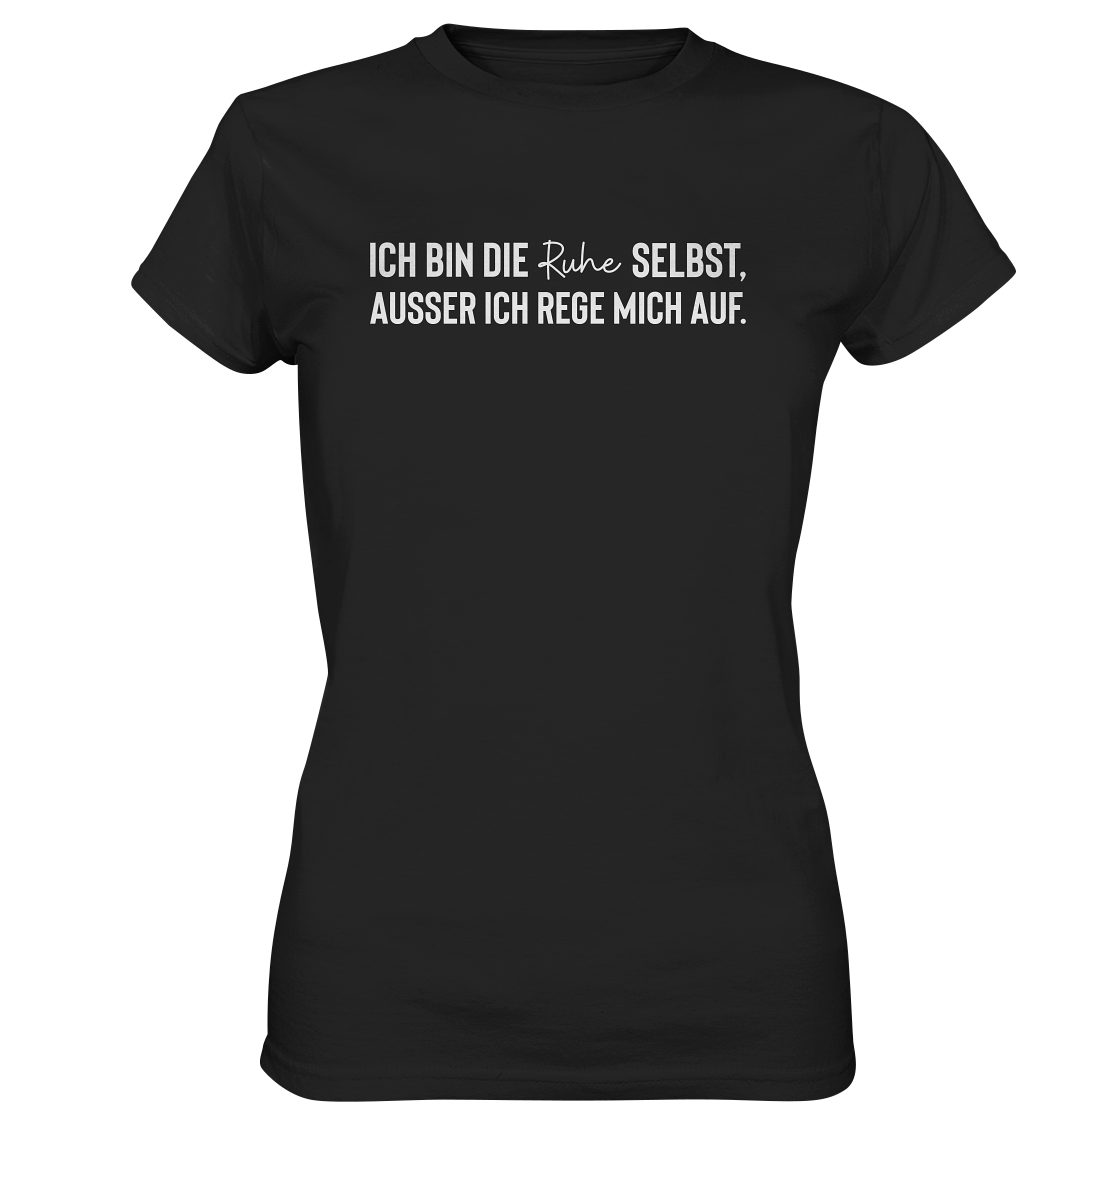 Bedruckt selbst, Deutschland, rege T-Shirt die bin Ruhe mich Frauen RABUMSEL ausser Waschbeständigkeit, "Ich - Farbbrillianz T-Shirt auf." in ich Hohe Hohe